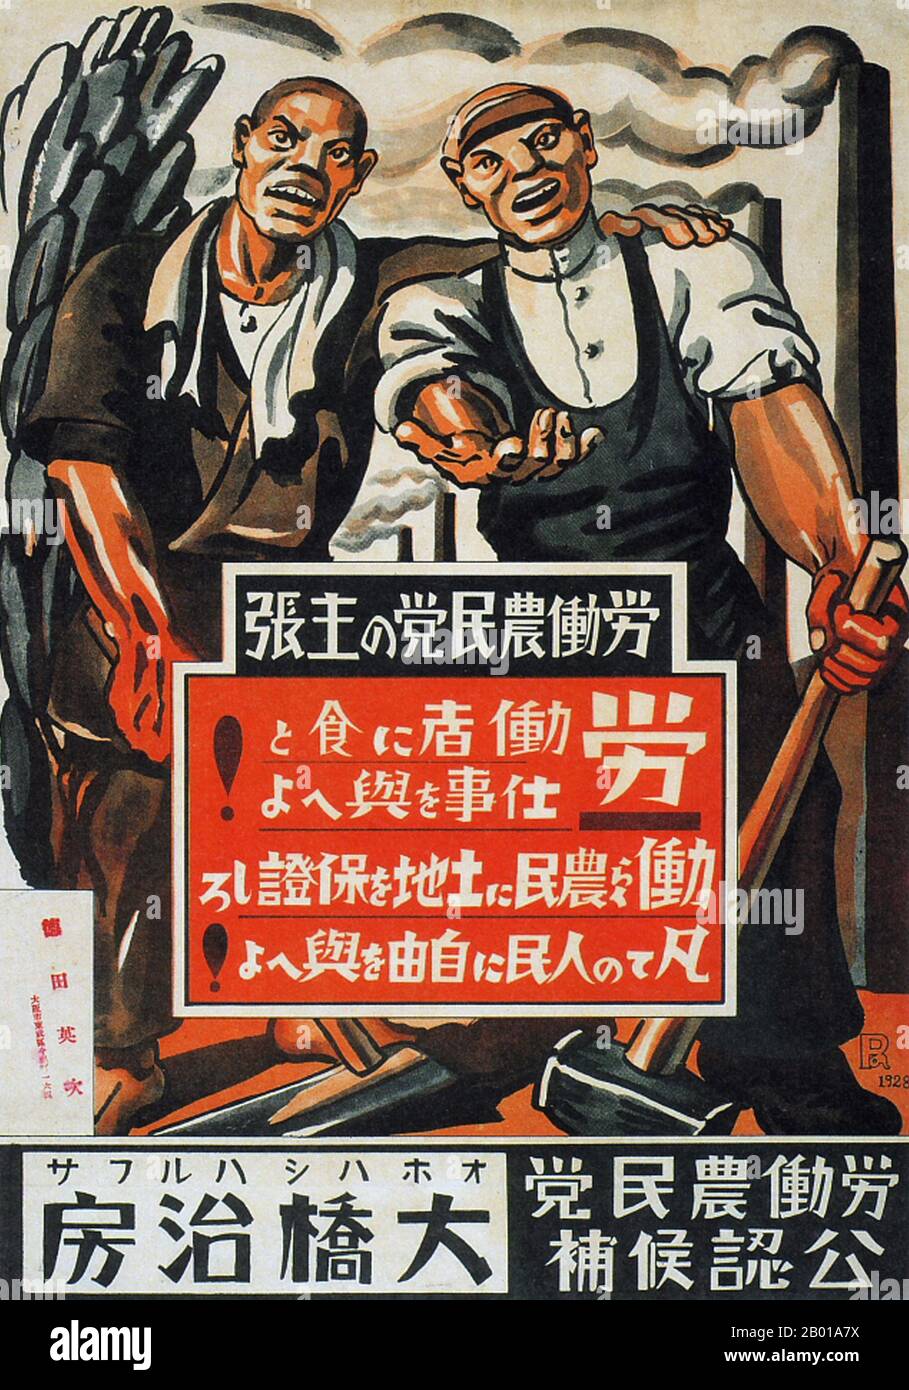 Giappone: 'Harufusa Ohashi'. Poster delle elezioni di sinistra per il partito laburista-contadino, 1928. Alla fine del 1920s e del 1930s in Giappone, si sviluppò un nuovo stile di poster che rifletteva la crescente influenza delle masse nella società giapponese. Questi manifesti d'arte furono fortemente influenzati dalle forze politiche emergenti del comunismo e del fascismo in Europa e nell'Unione Sovietica, adottando uno stile che incorporava slogan coraggiosi con temi artistici che spaziavano dal realismo socialista leftista allo stateismo e al benessere pubblico diretto dallo Stato, al militarismo e all'espansionismo imperialista. Foto Stock